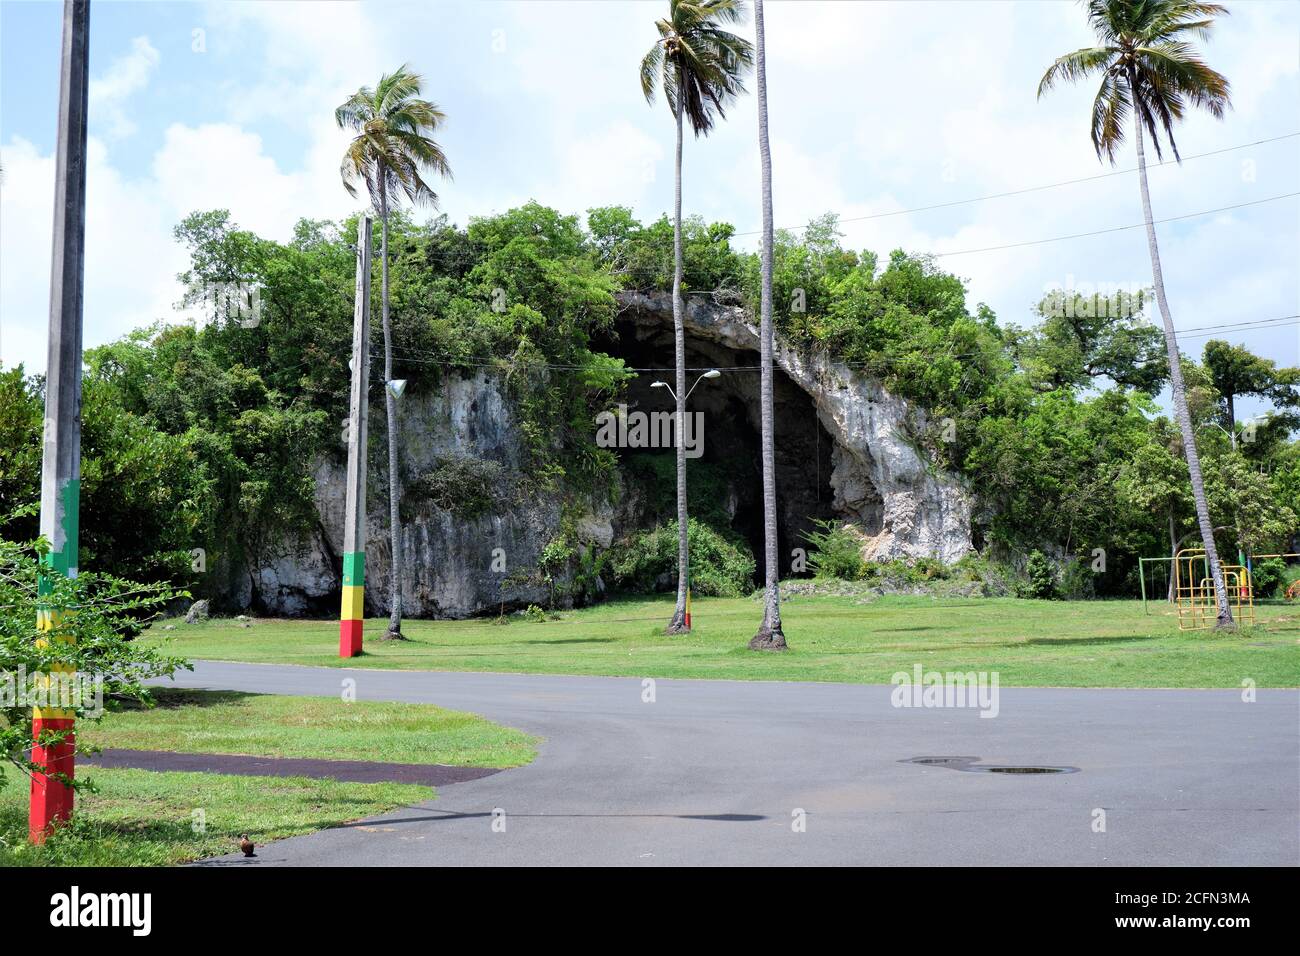 grotte dans la ville tropicale de porto rico connue sous le nom de loiza. Banque D'Images